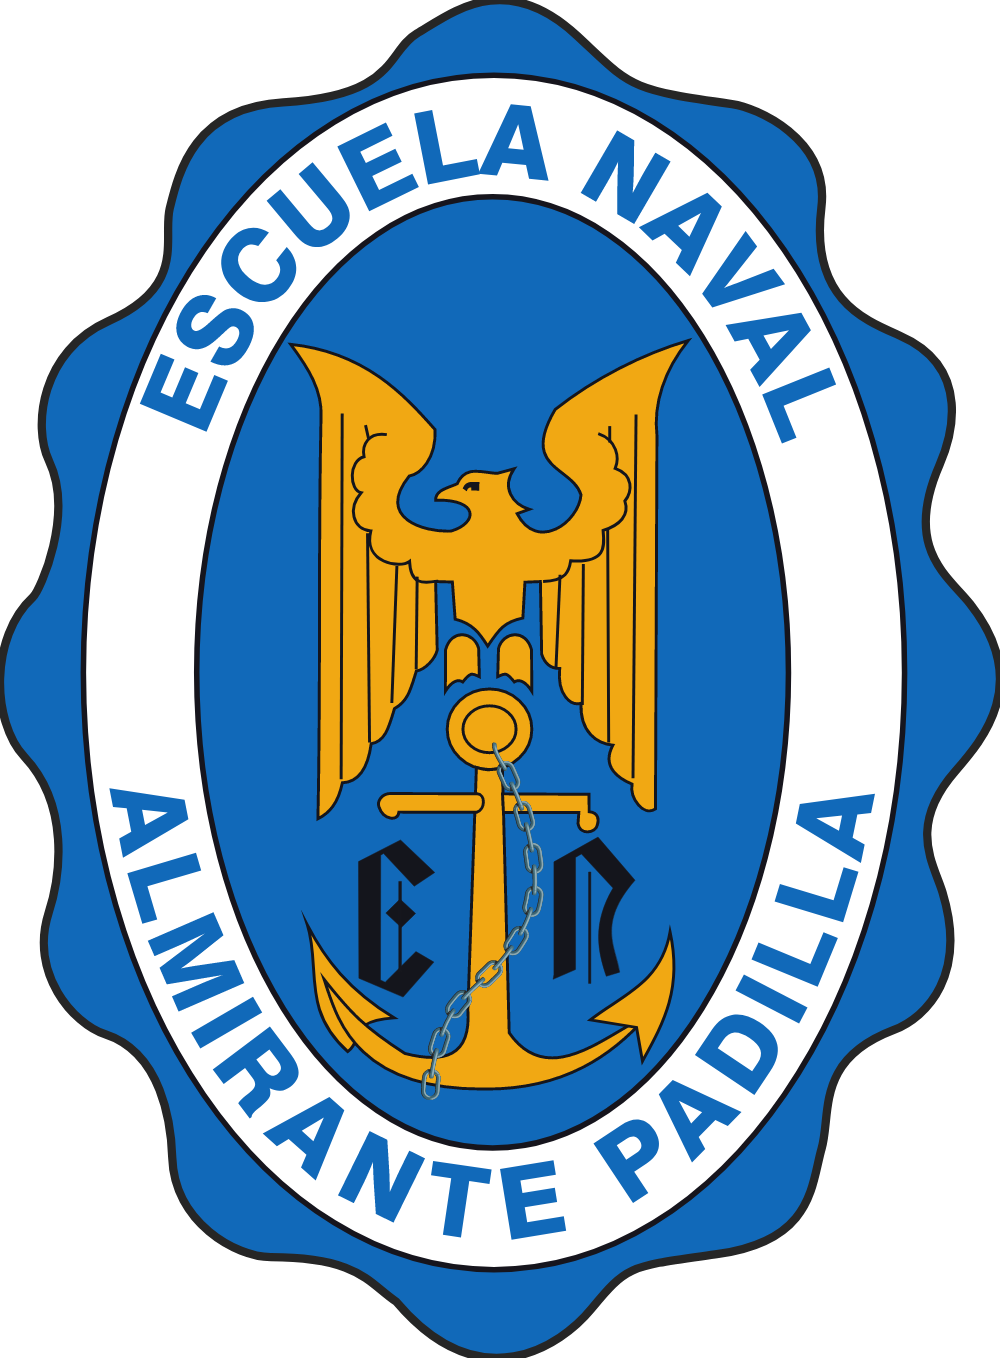 Escuela Naval Almirante Padilla Logo Logos